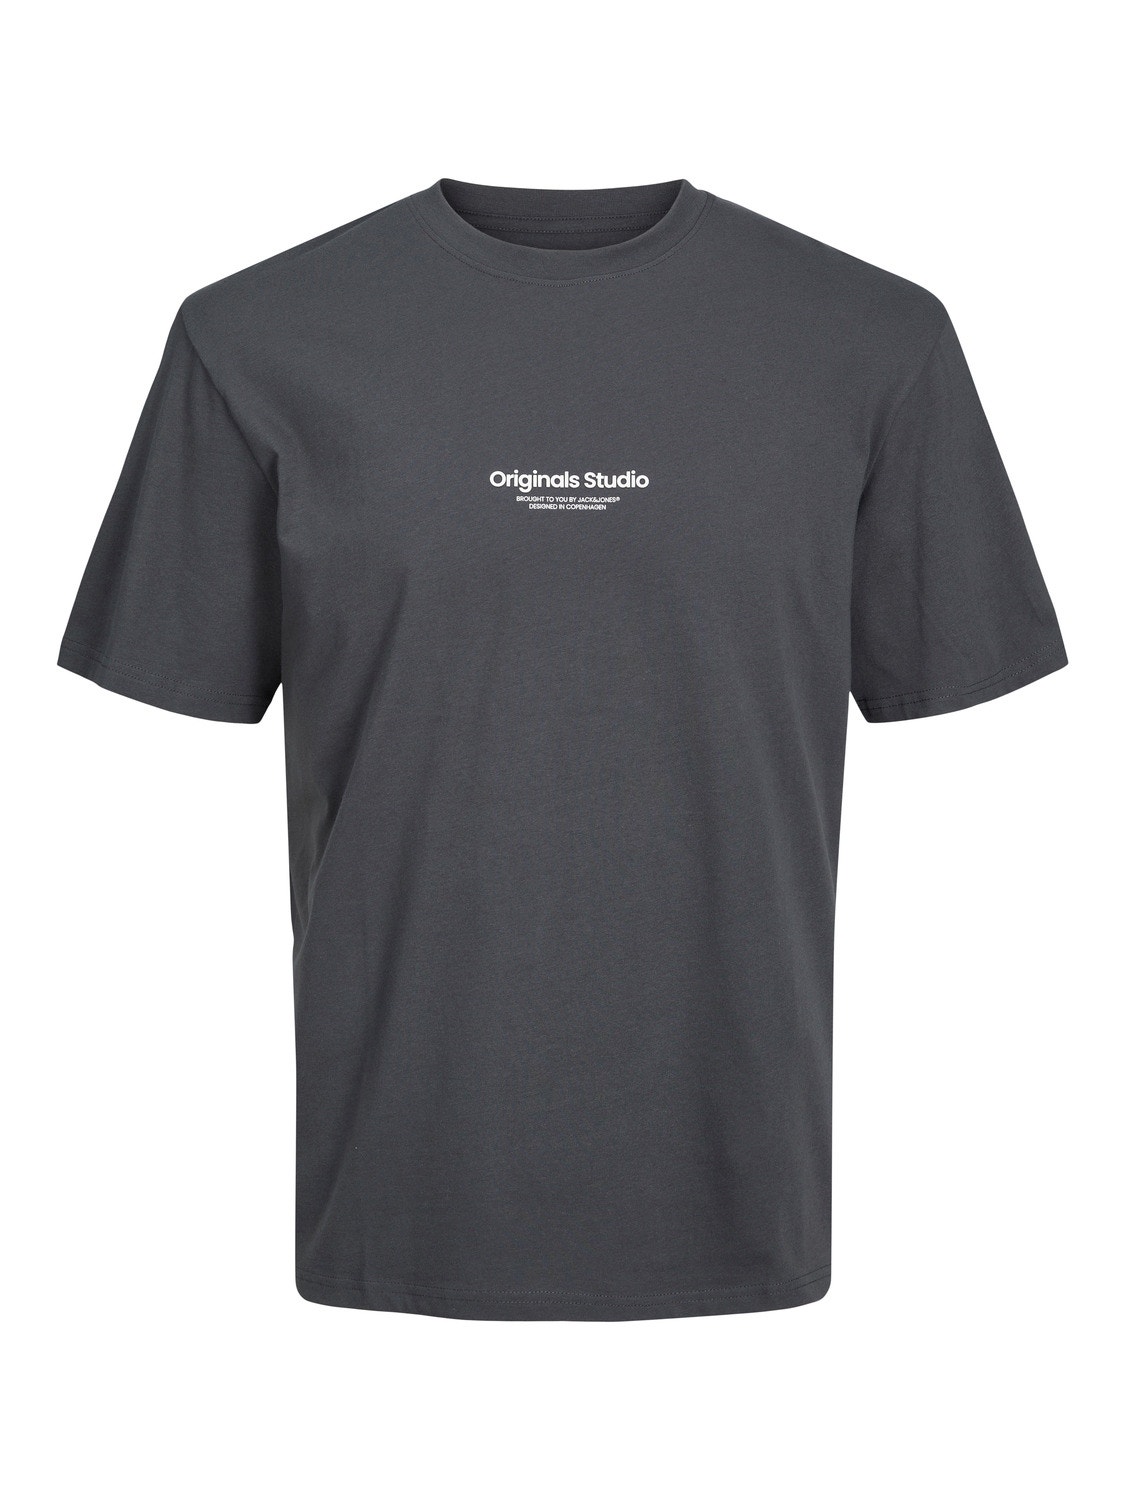 Jack & Jones Bedrukt T-shirt Voor jongens -Asphalt - 12242827